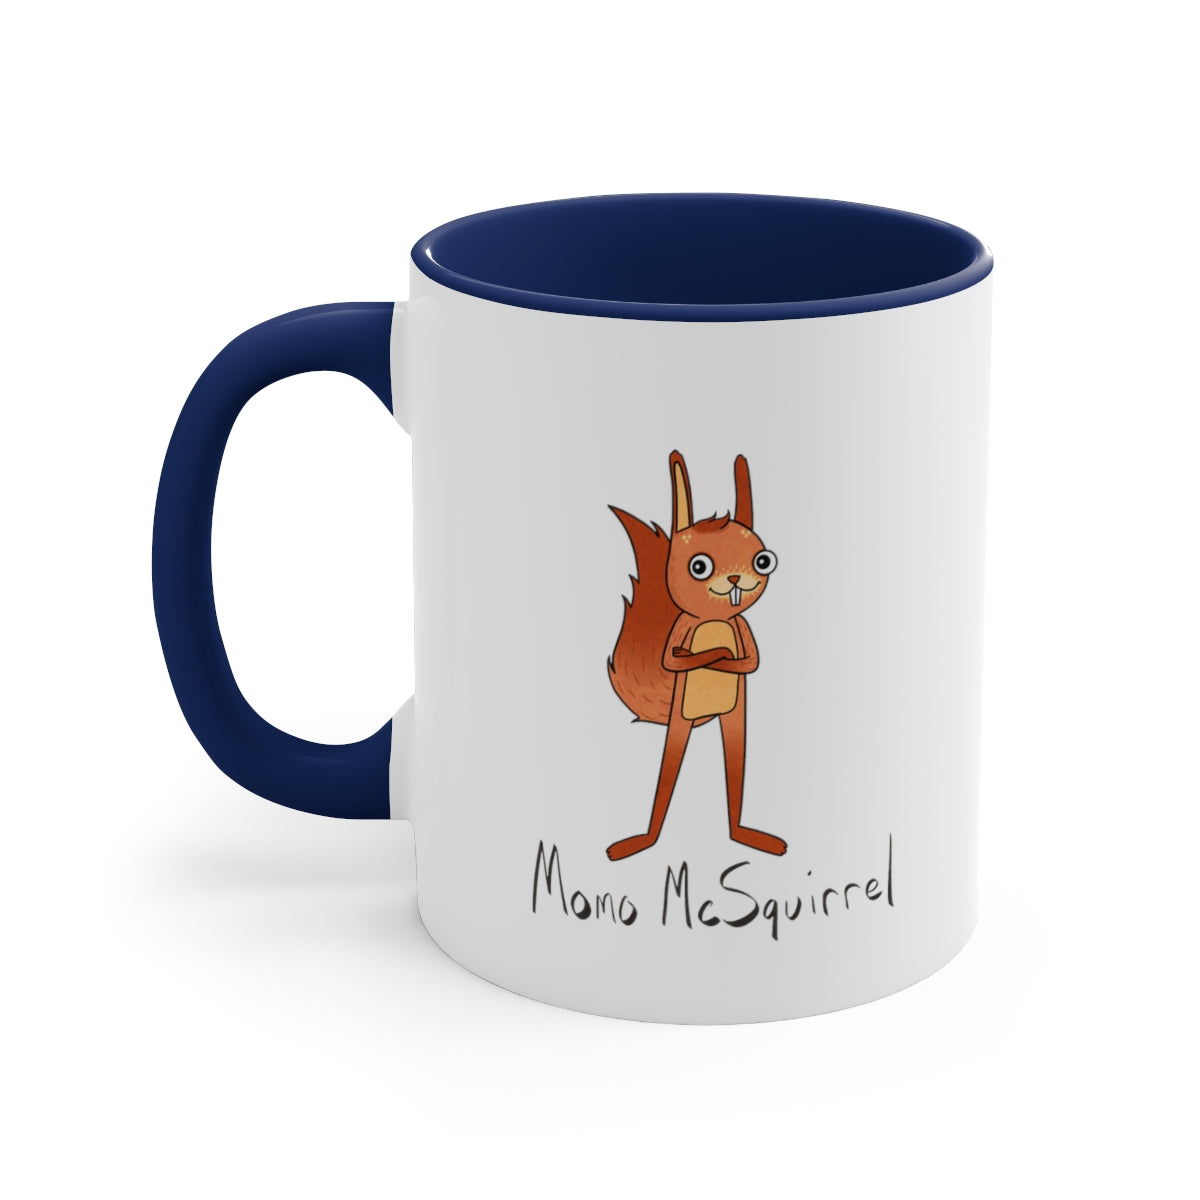 Momo McSquirrel Cozy Mug